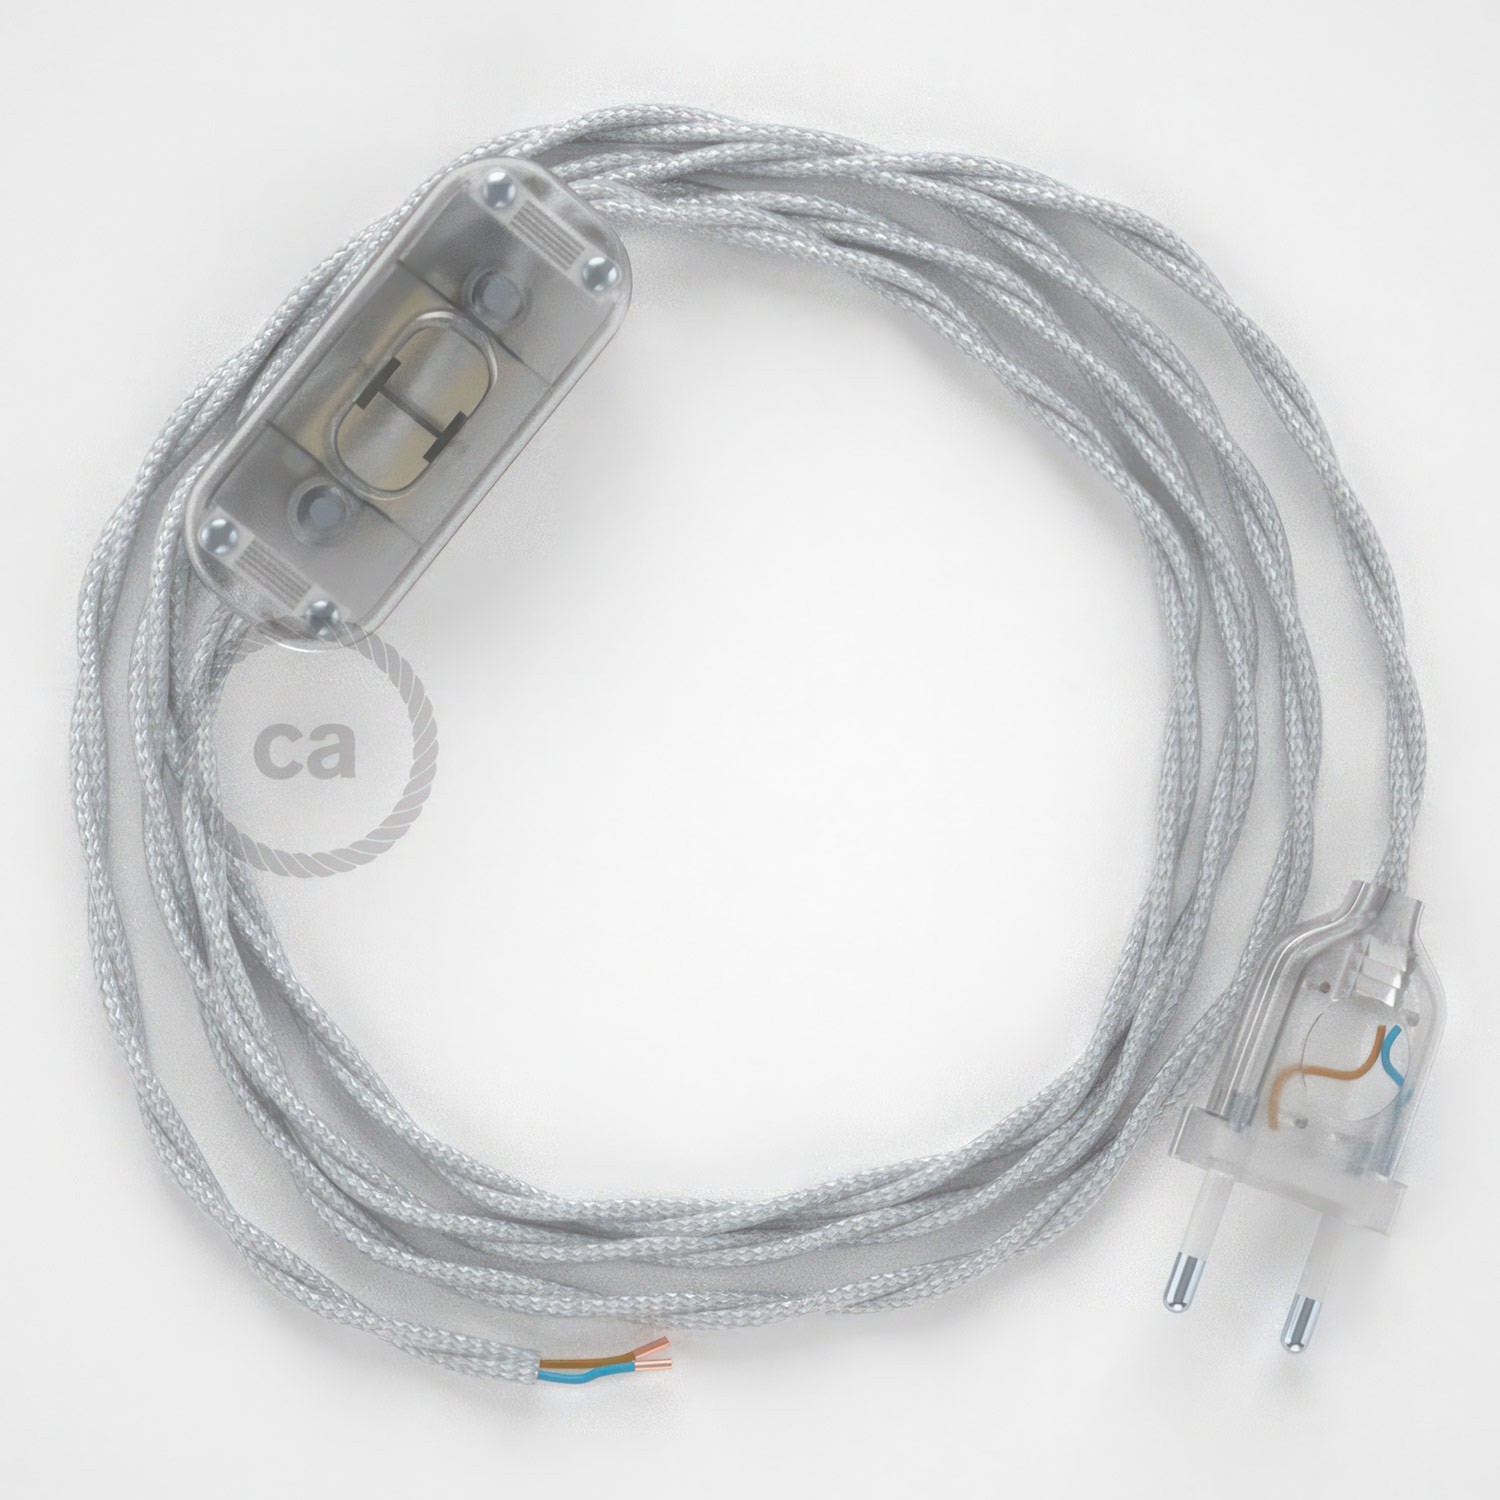 Cableado para lámpara, cable TM02 Efecto Seda Plateado 1,8m. Elige tu el color de la clavija y del interruptor!